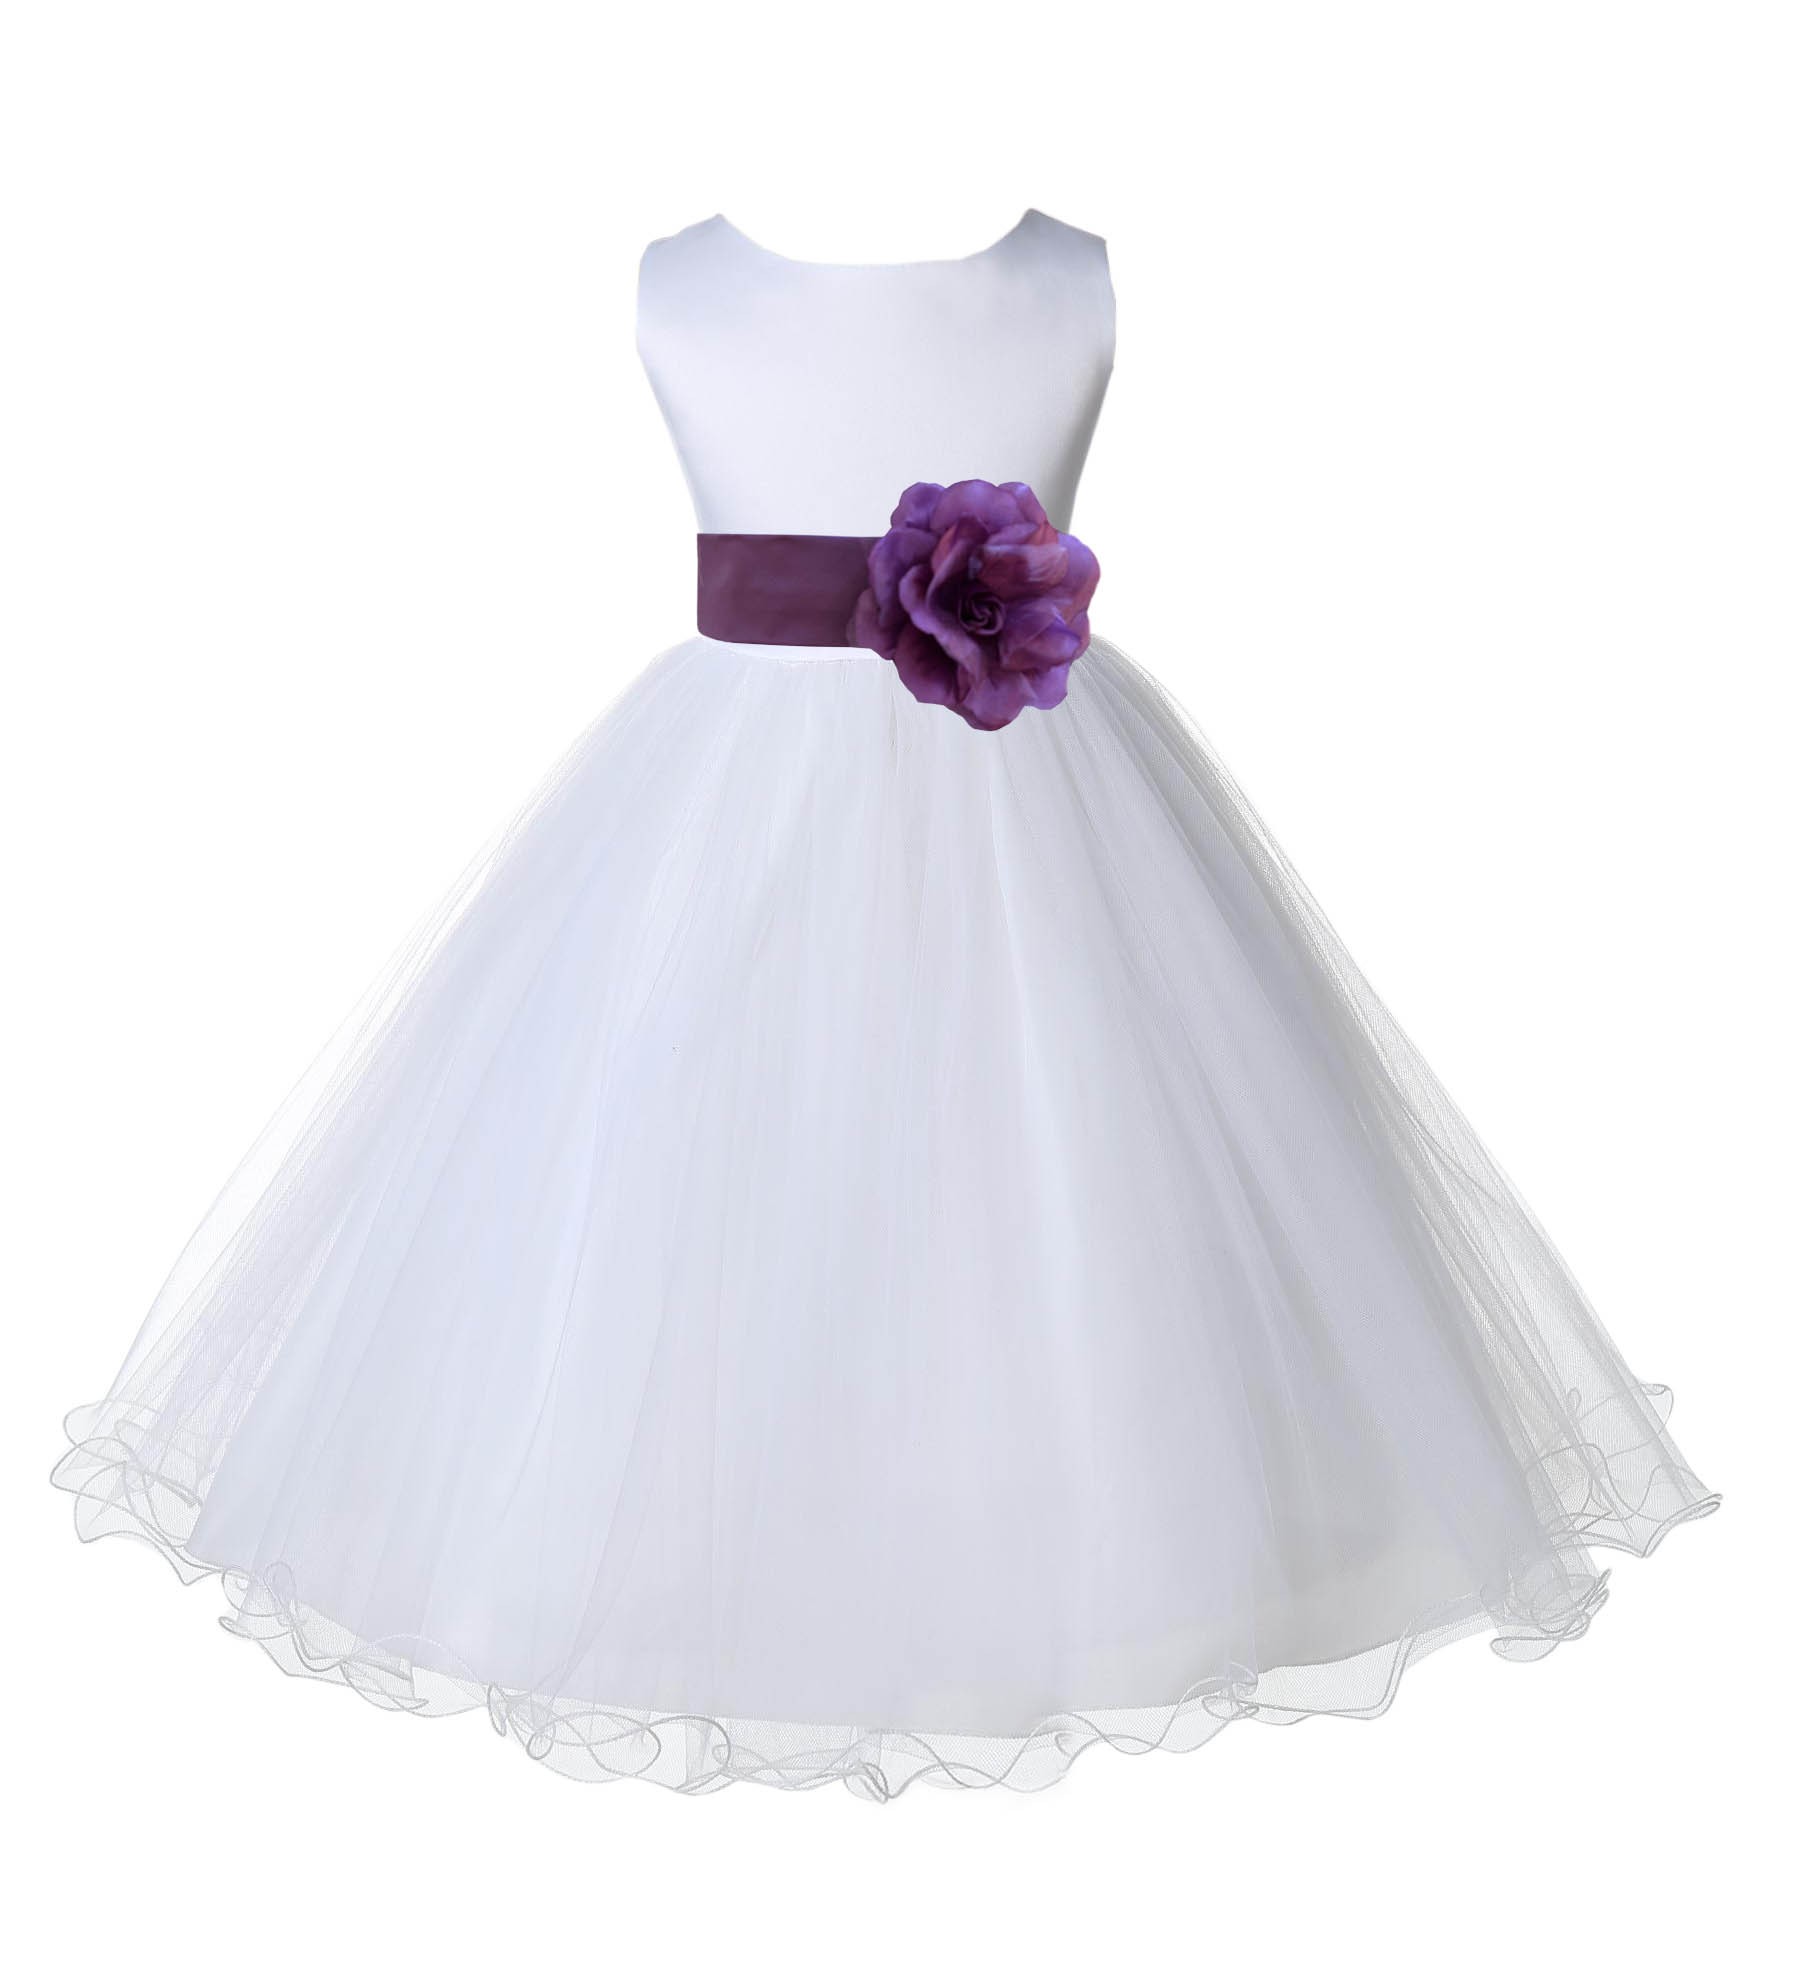 White/Wisteria Tulle Rattail Edge Flower Girl Dress Wedding Bridal 829S